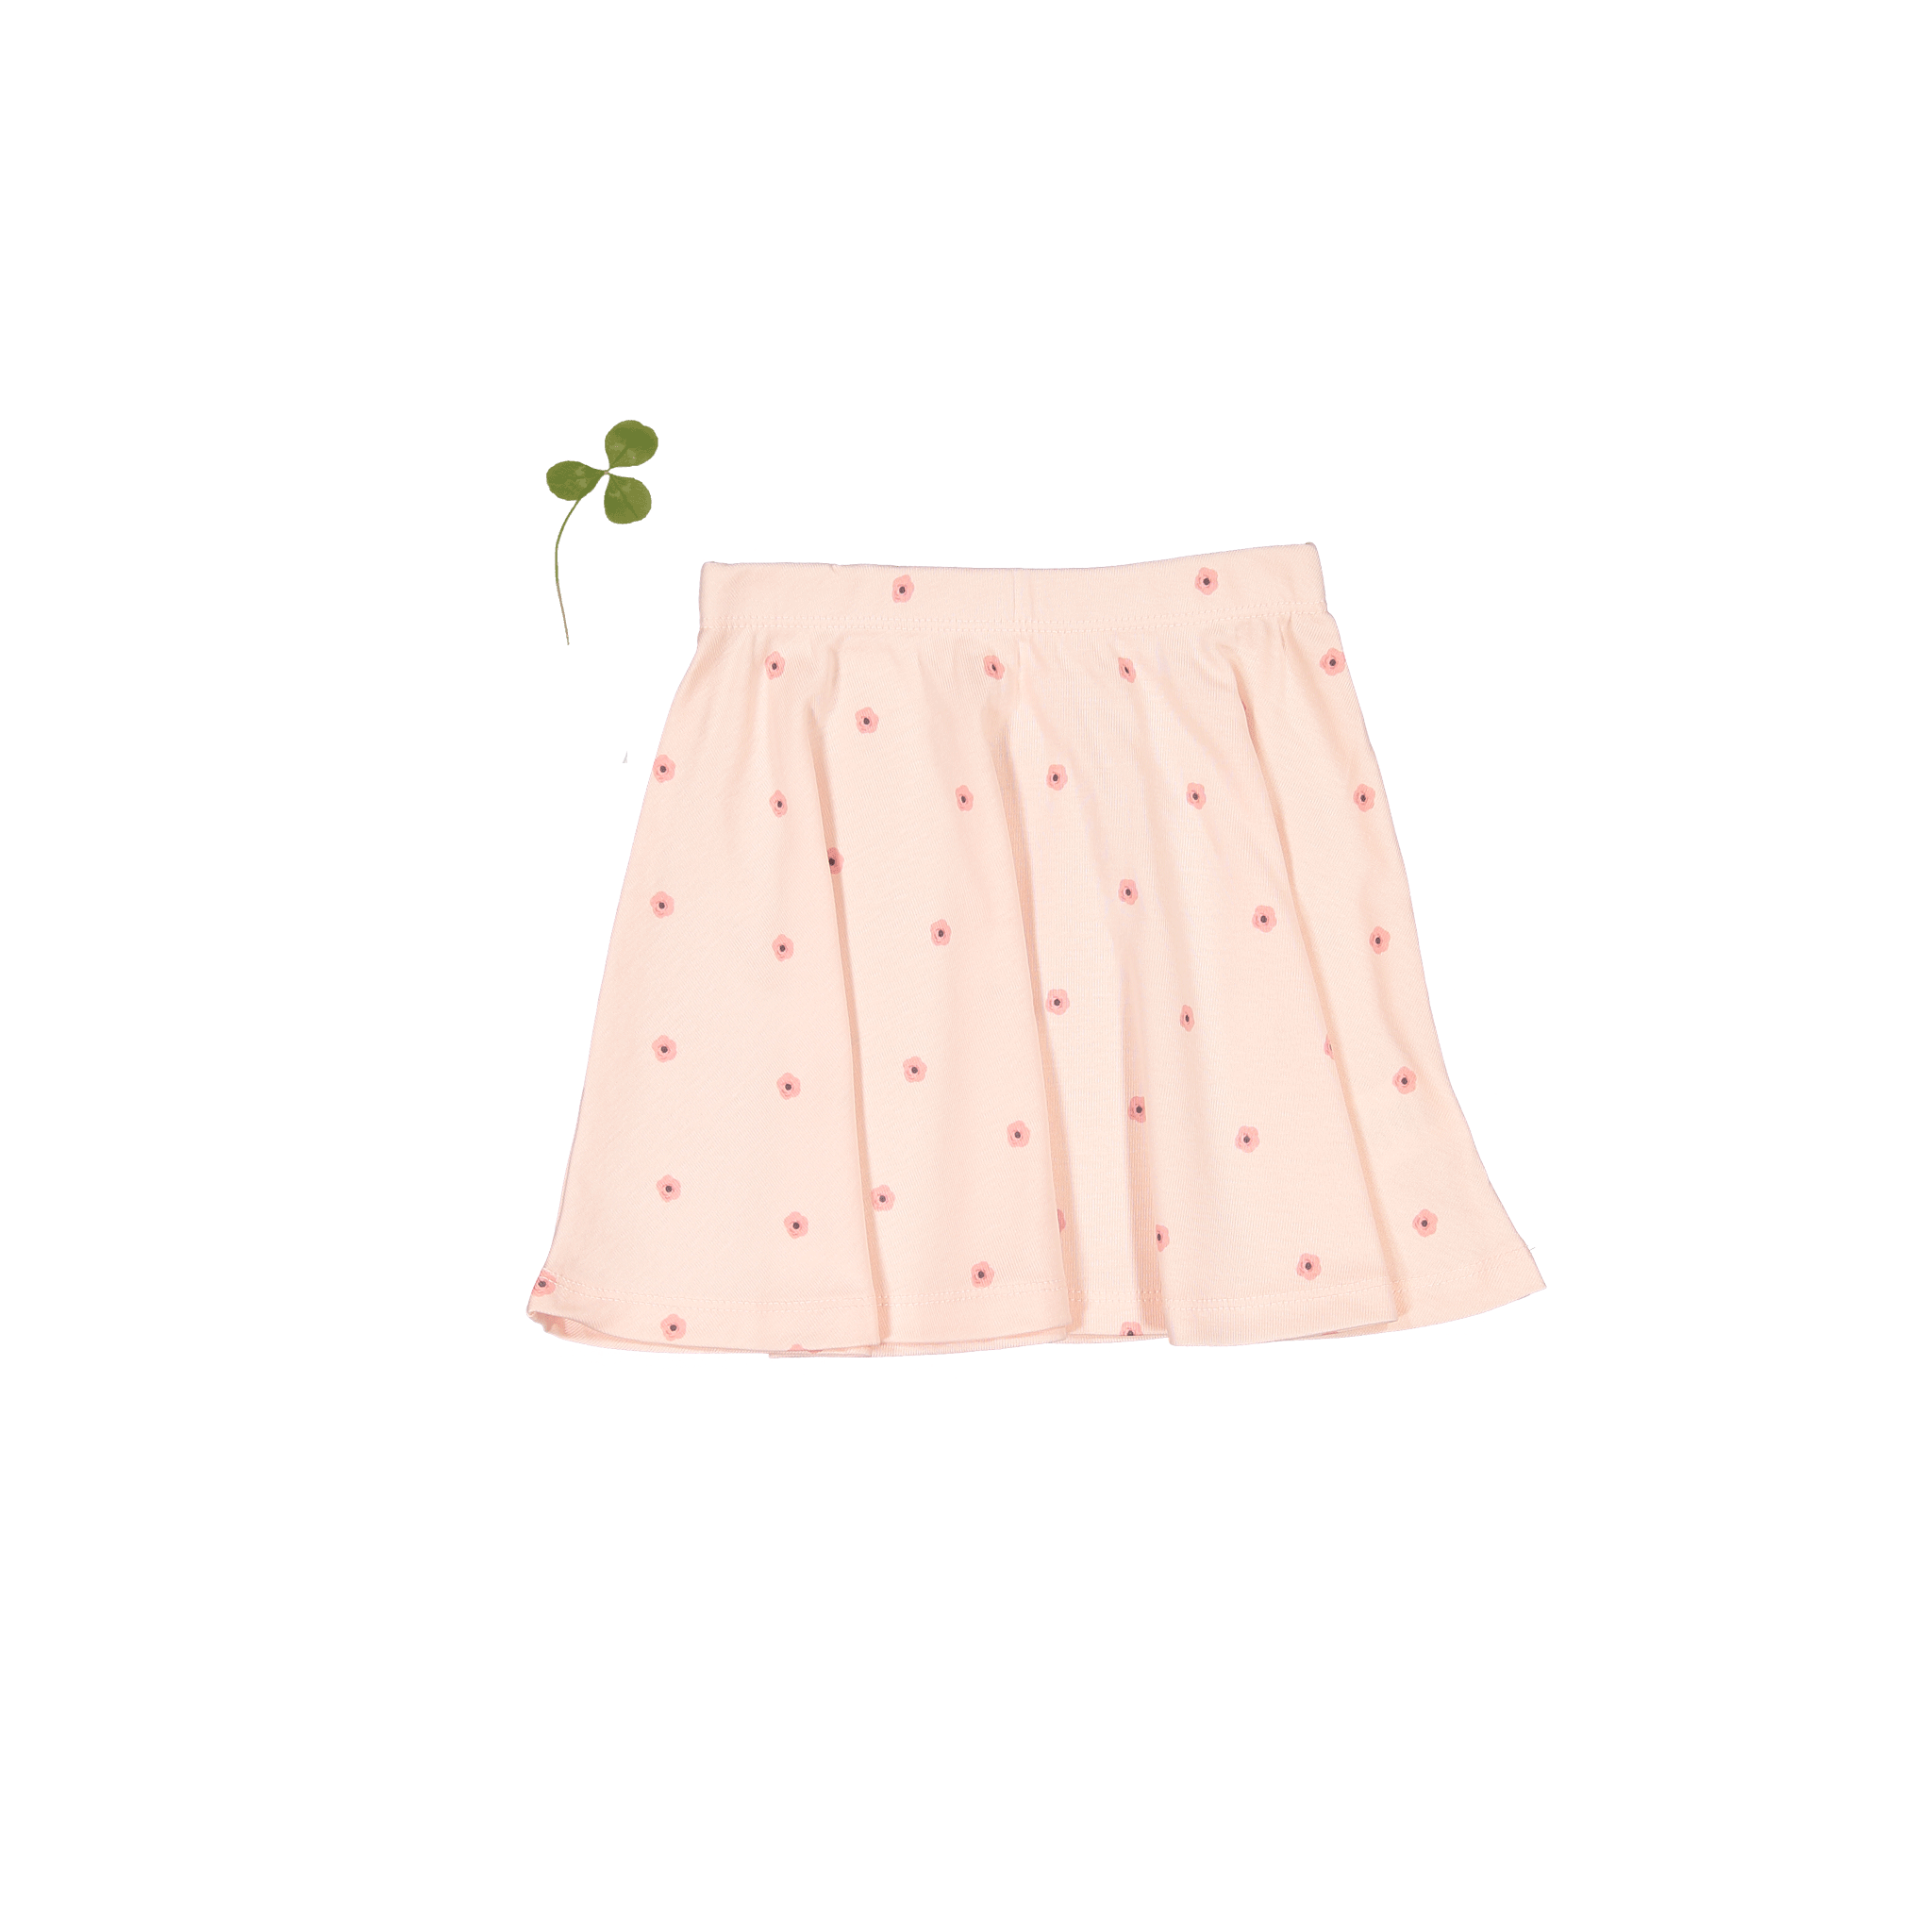 The Printed Skirt - Rose Flower